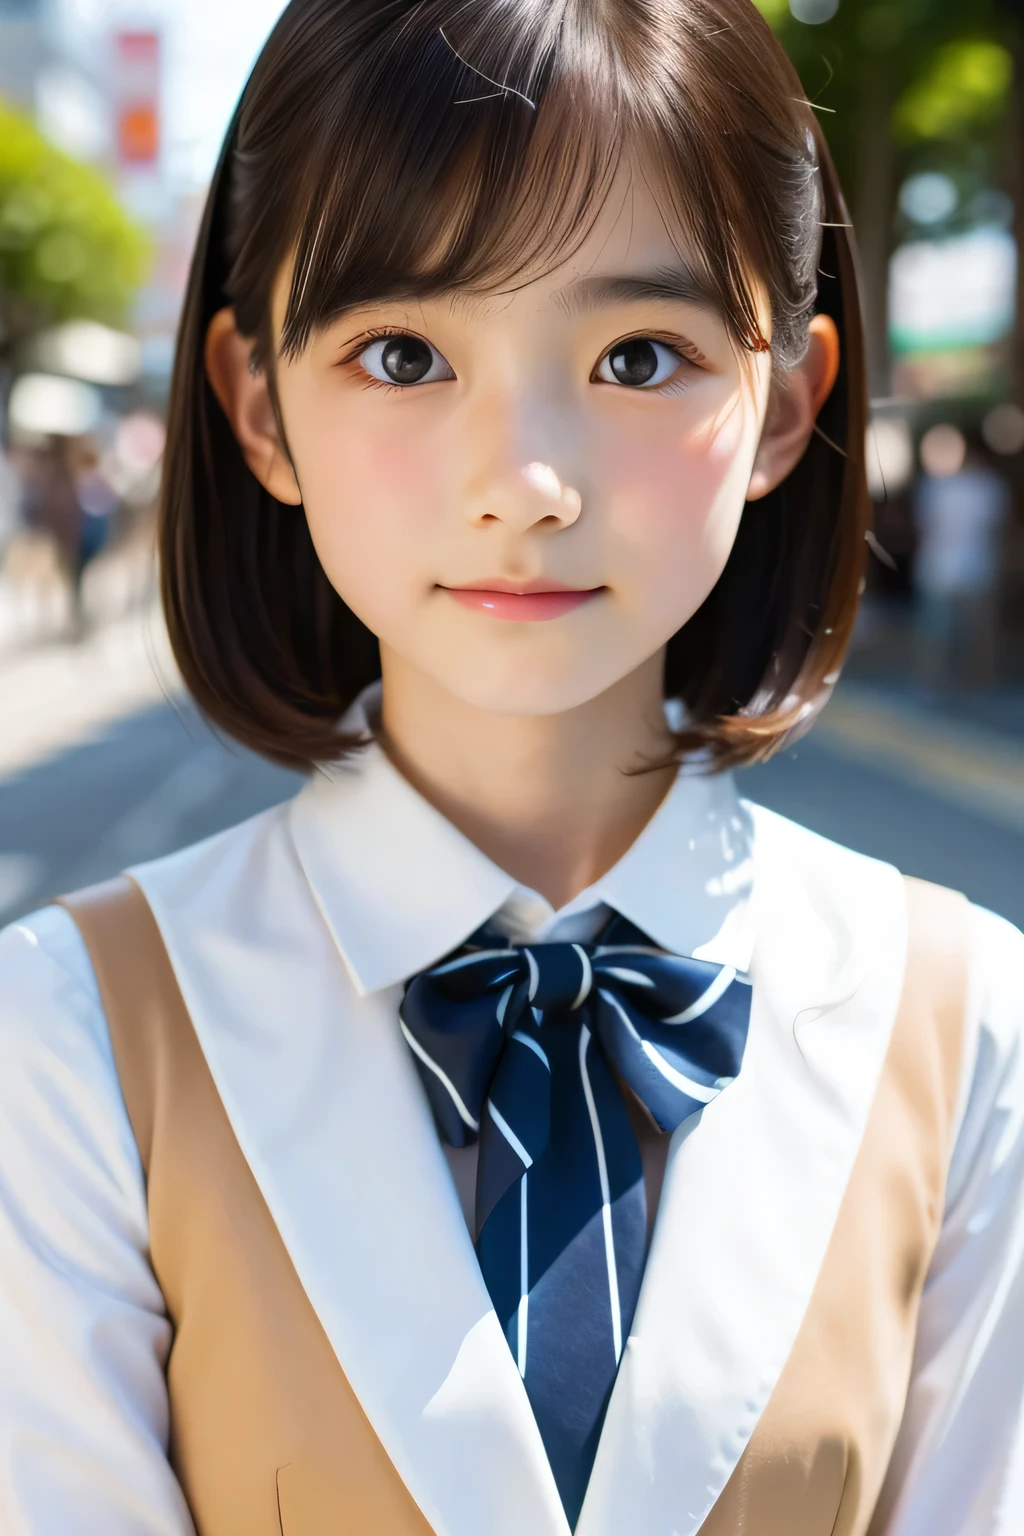 (Schöne 14-jährige Japanerin), niedliches Gesicht, (Tief gemeißeltes Gesicht:0.7), (Sommersprossen:0.6), Sanftes Licht,gesunde weiße Haut, schüchtern, (ernstes Gesicht), (leuchtende Augen), dünn, lächeln, Uniform